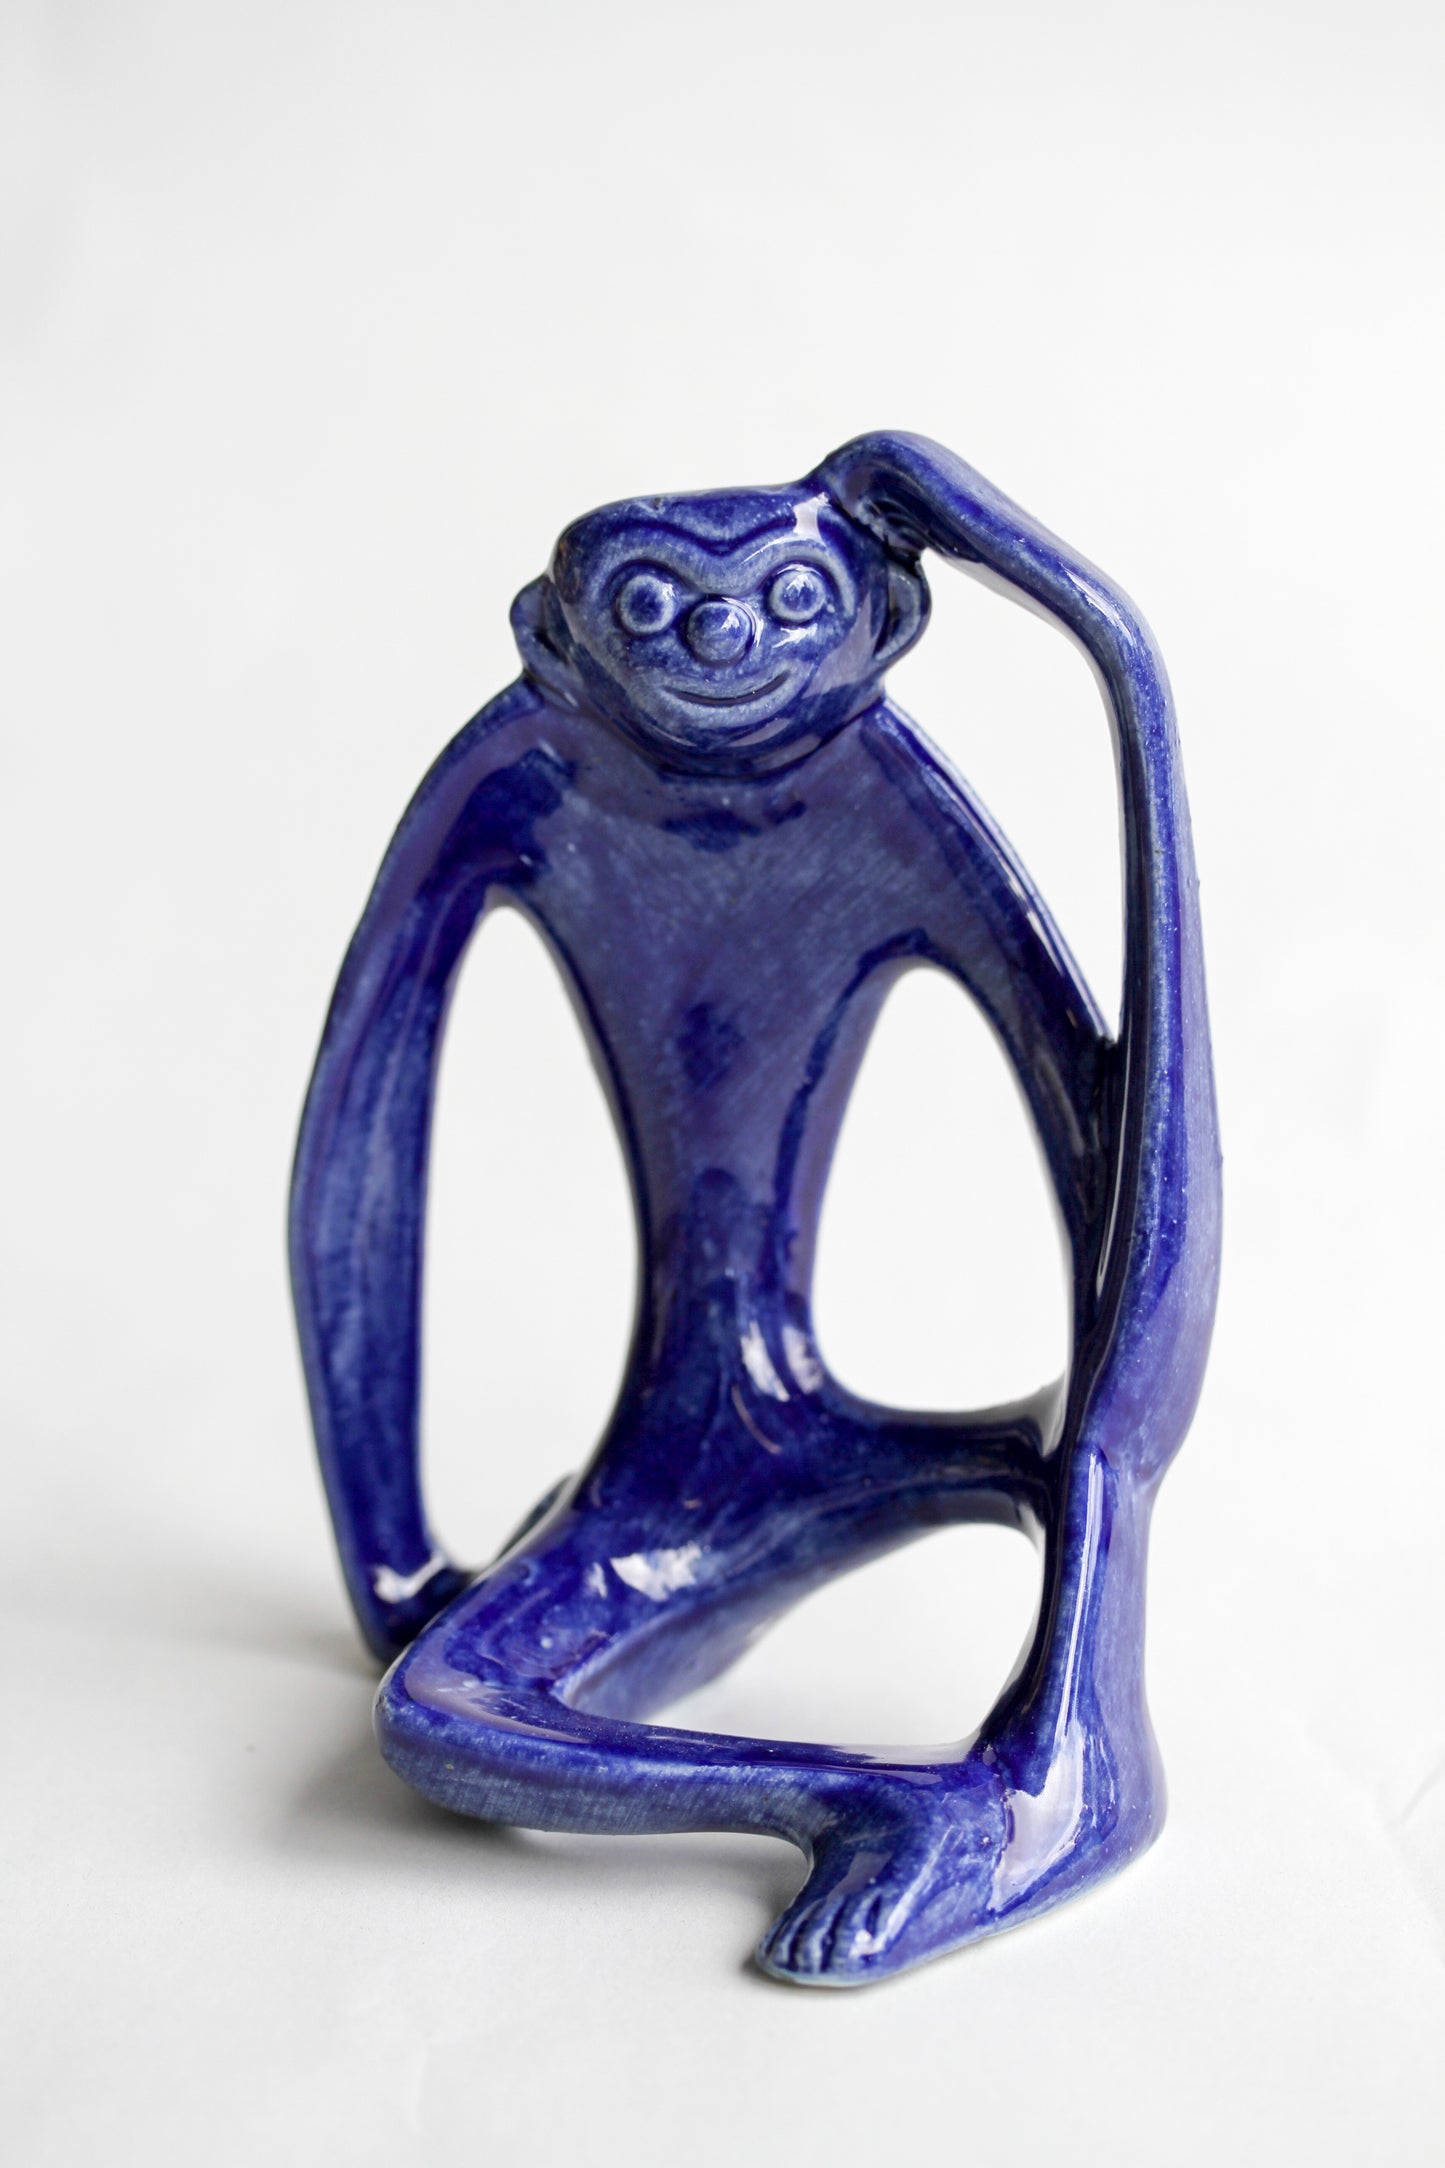 Monkey sculpture